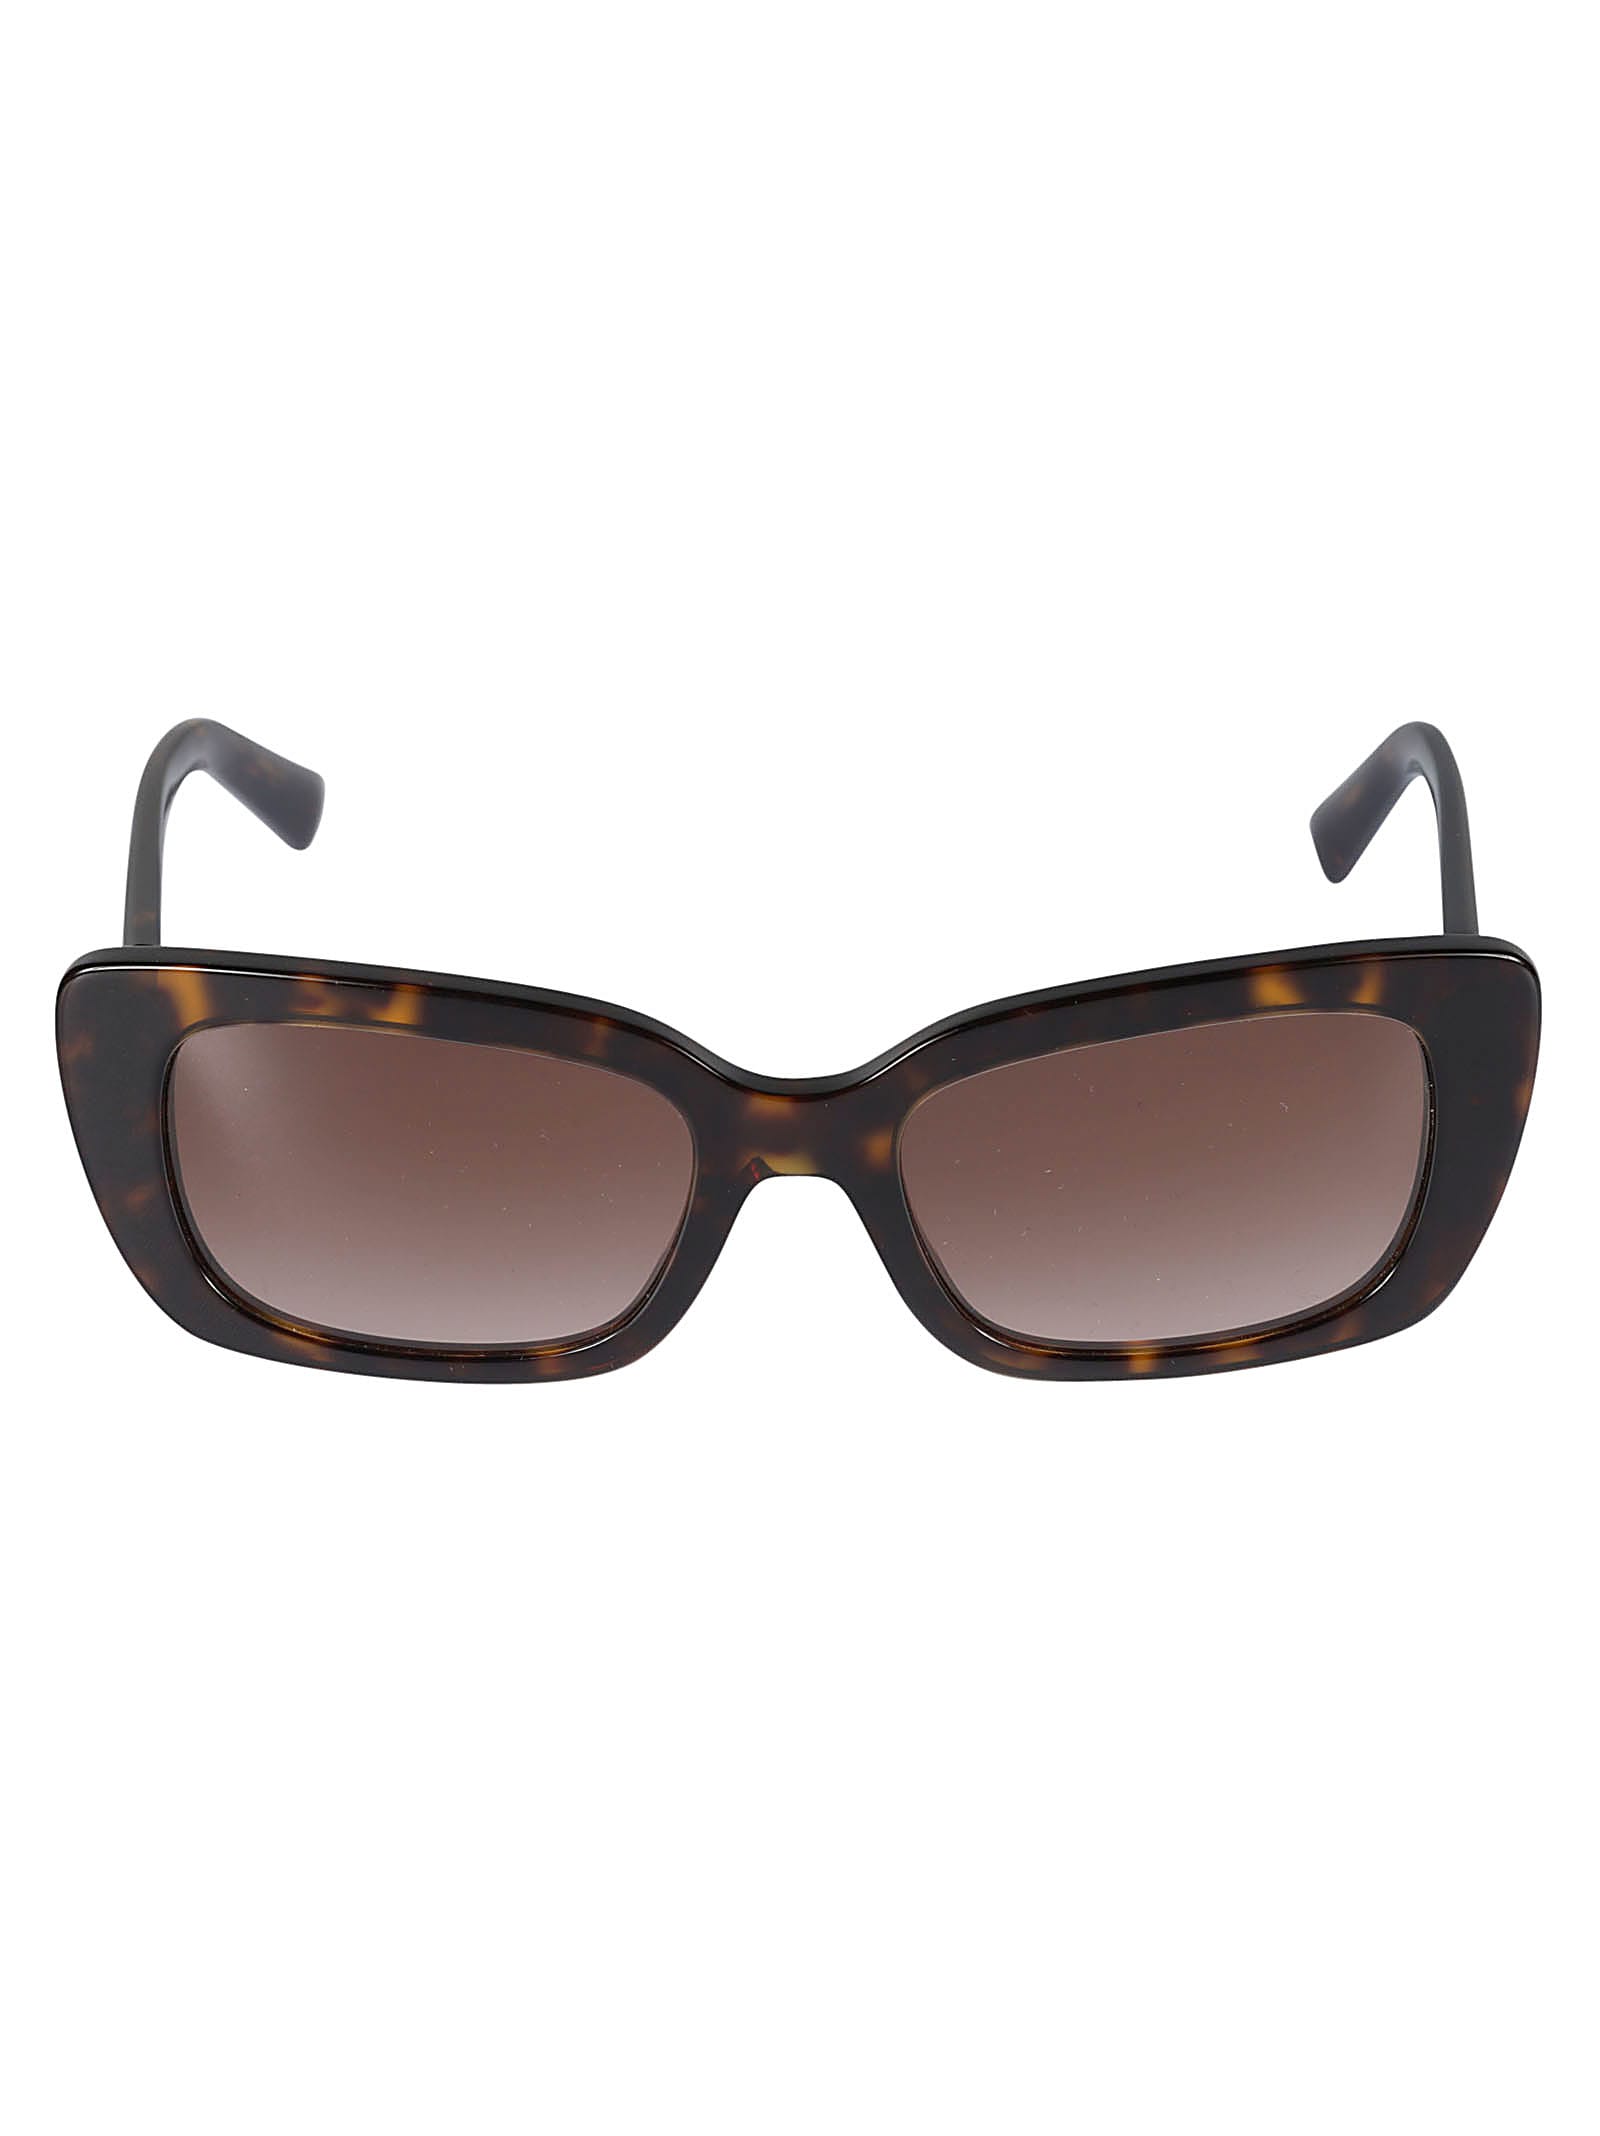 Valentino Sole500213 Sunglasses